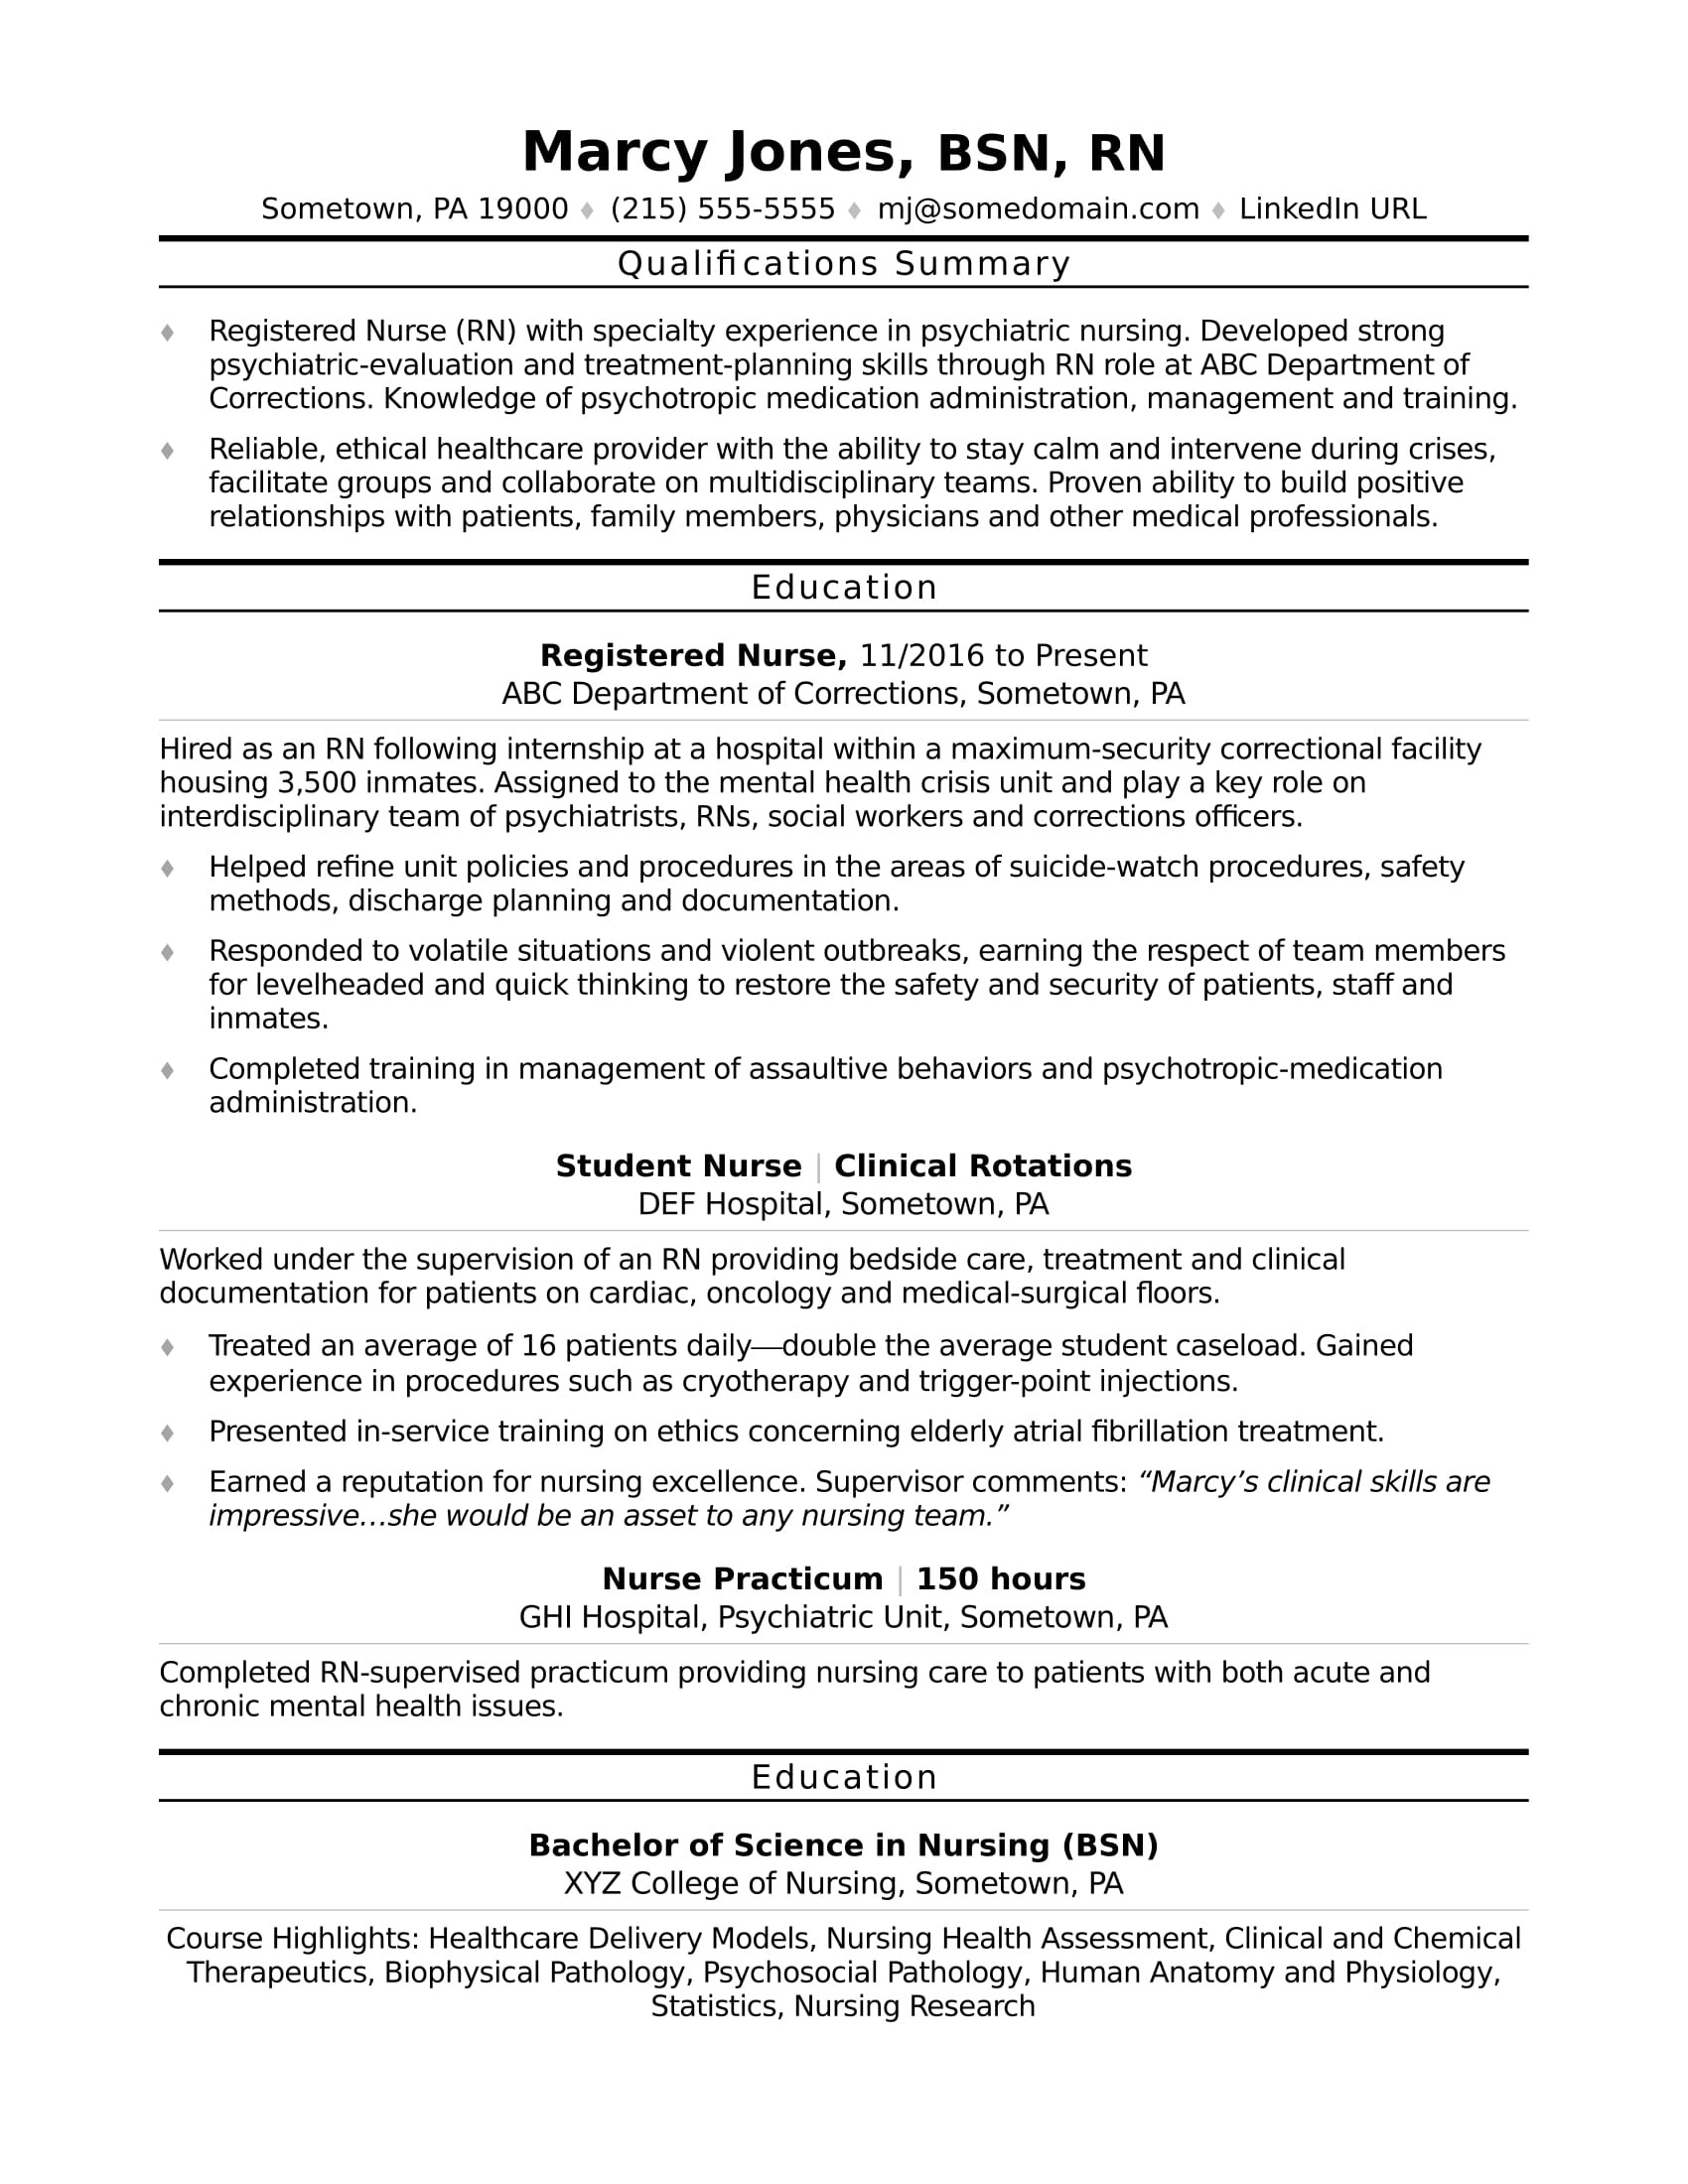 Sample Resume for A Registered Nurse Working at Hospitals Entry-level Nurse Resume Monster.com